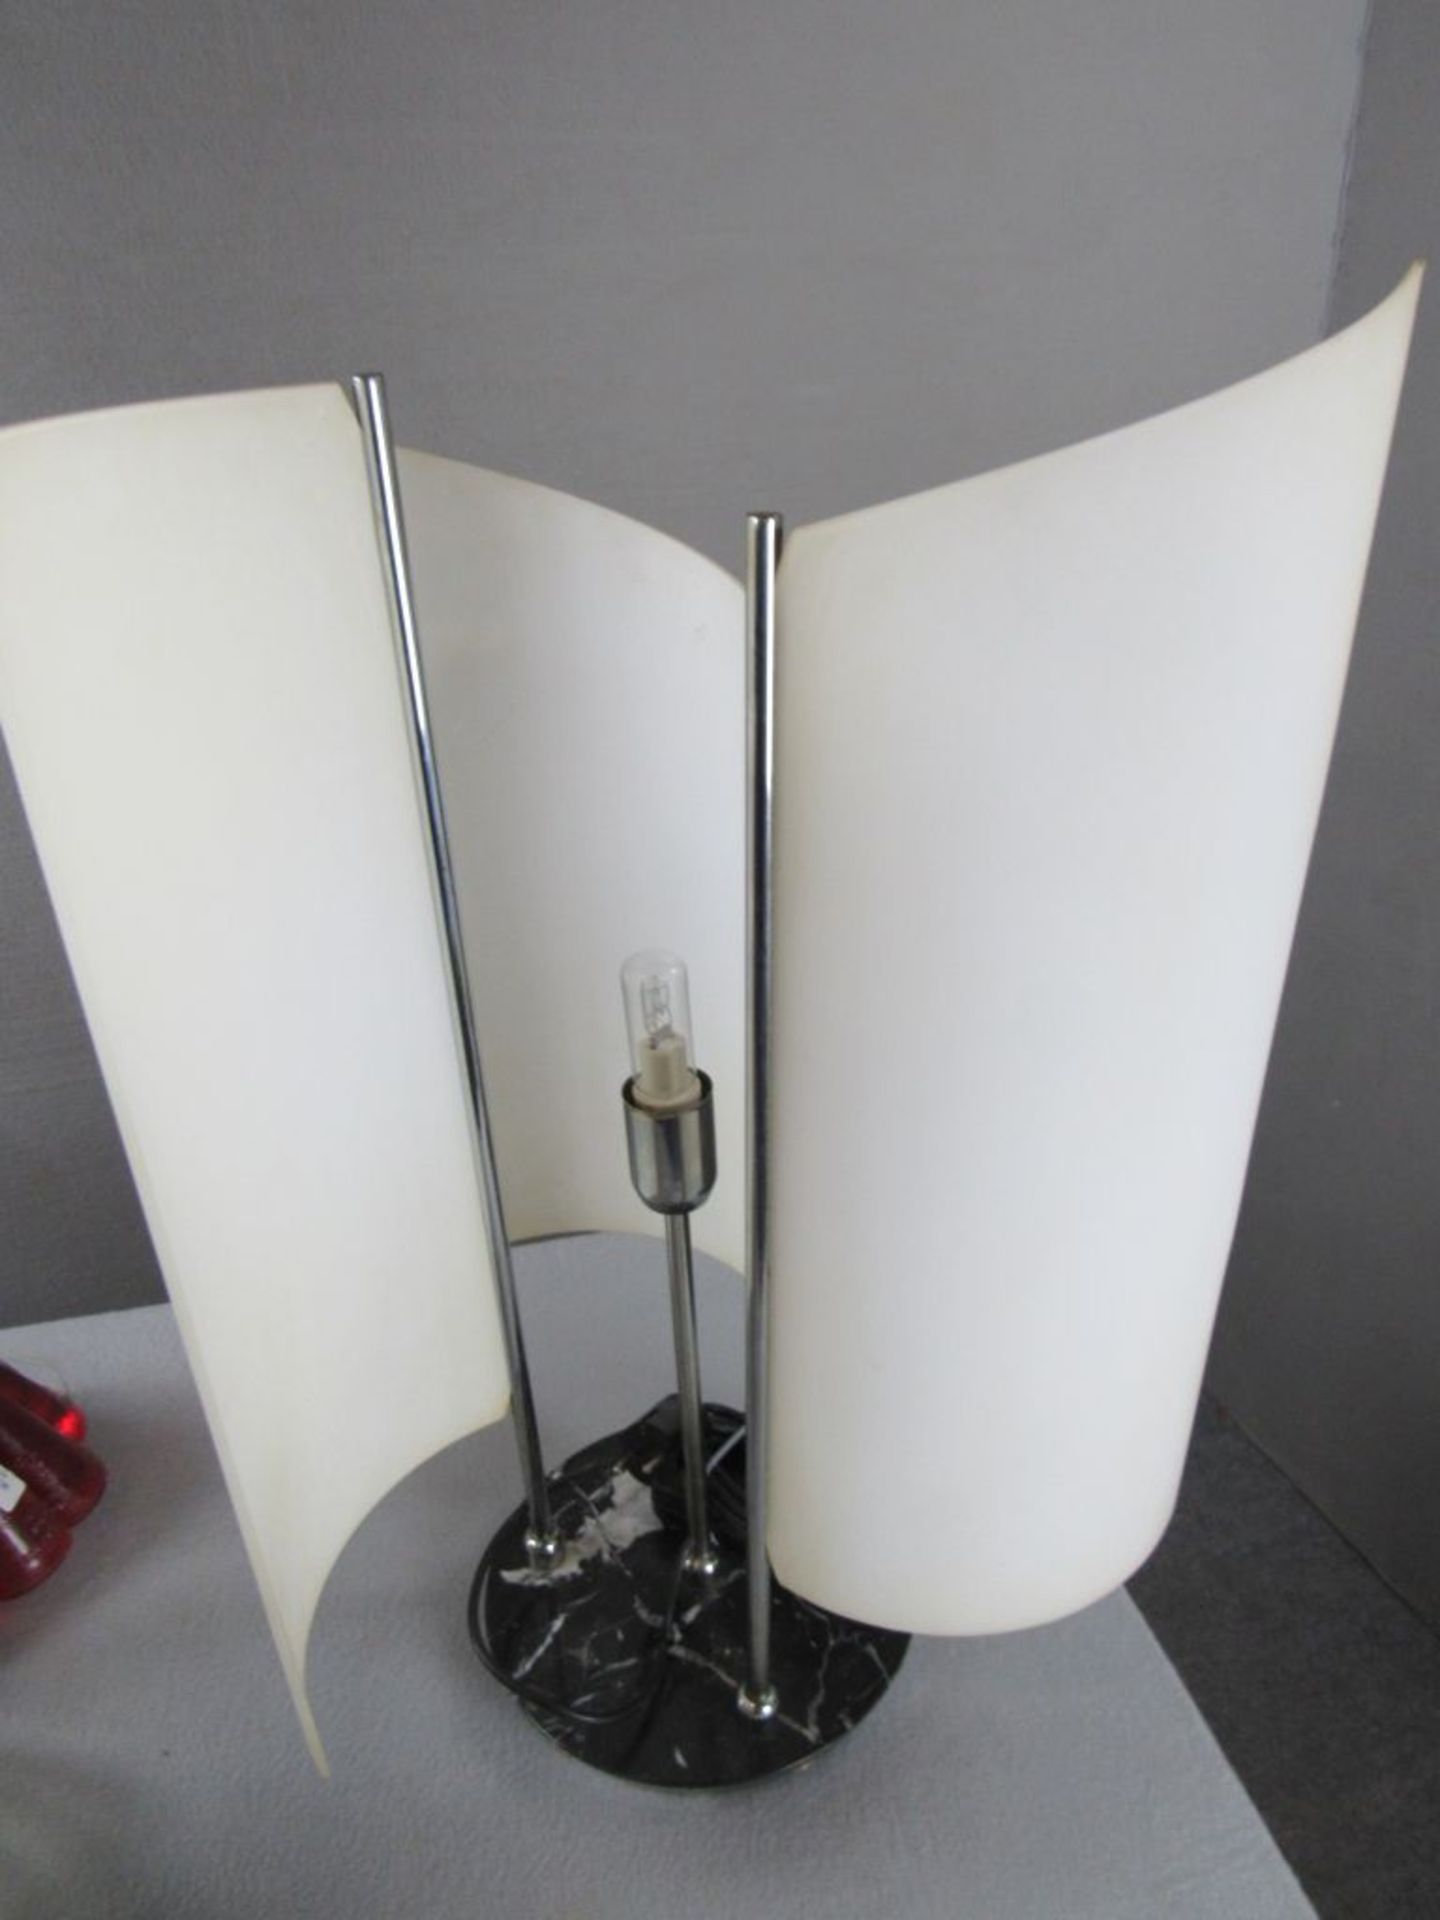 Designertischlampe Marmorfuß darauf drei schwenkbare Glaskörper Hersteller wohl Oluce Modell Arianna - Image 3 of 3